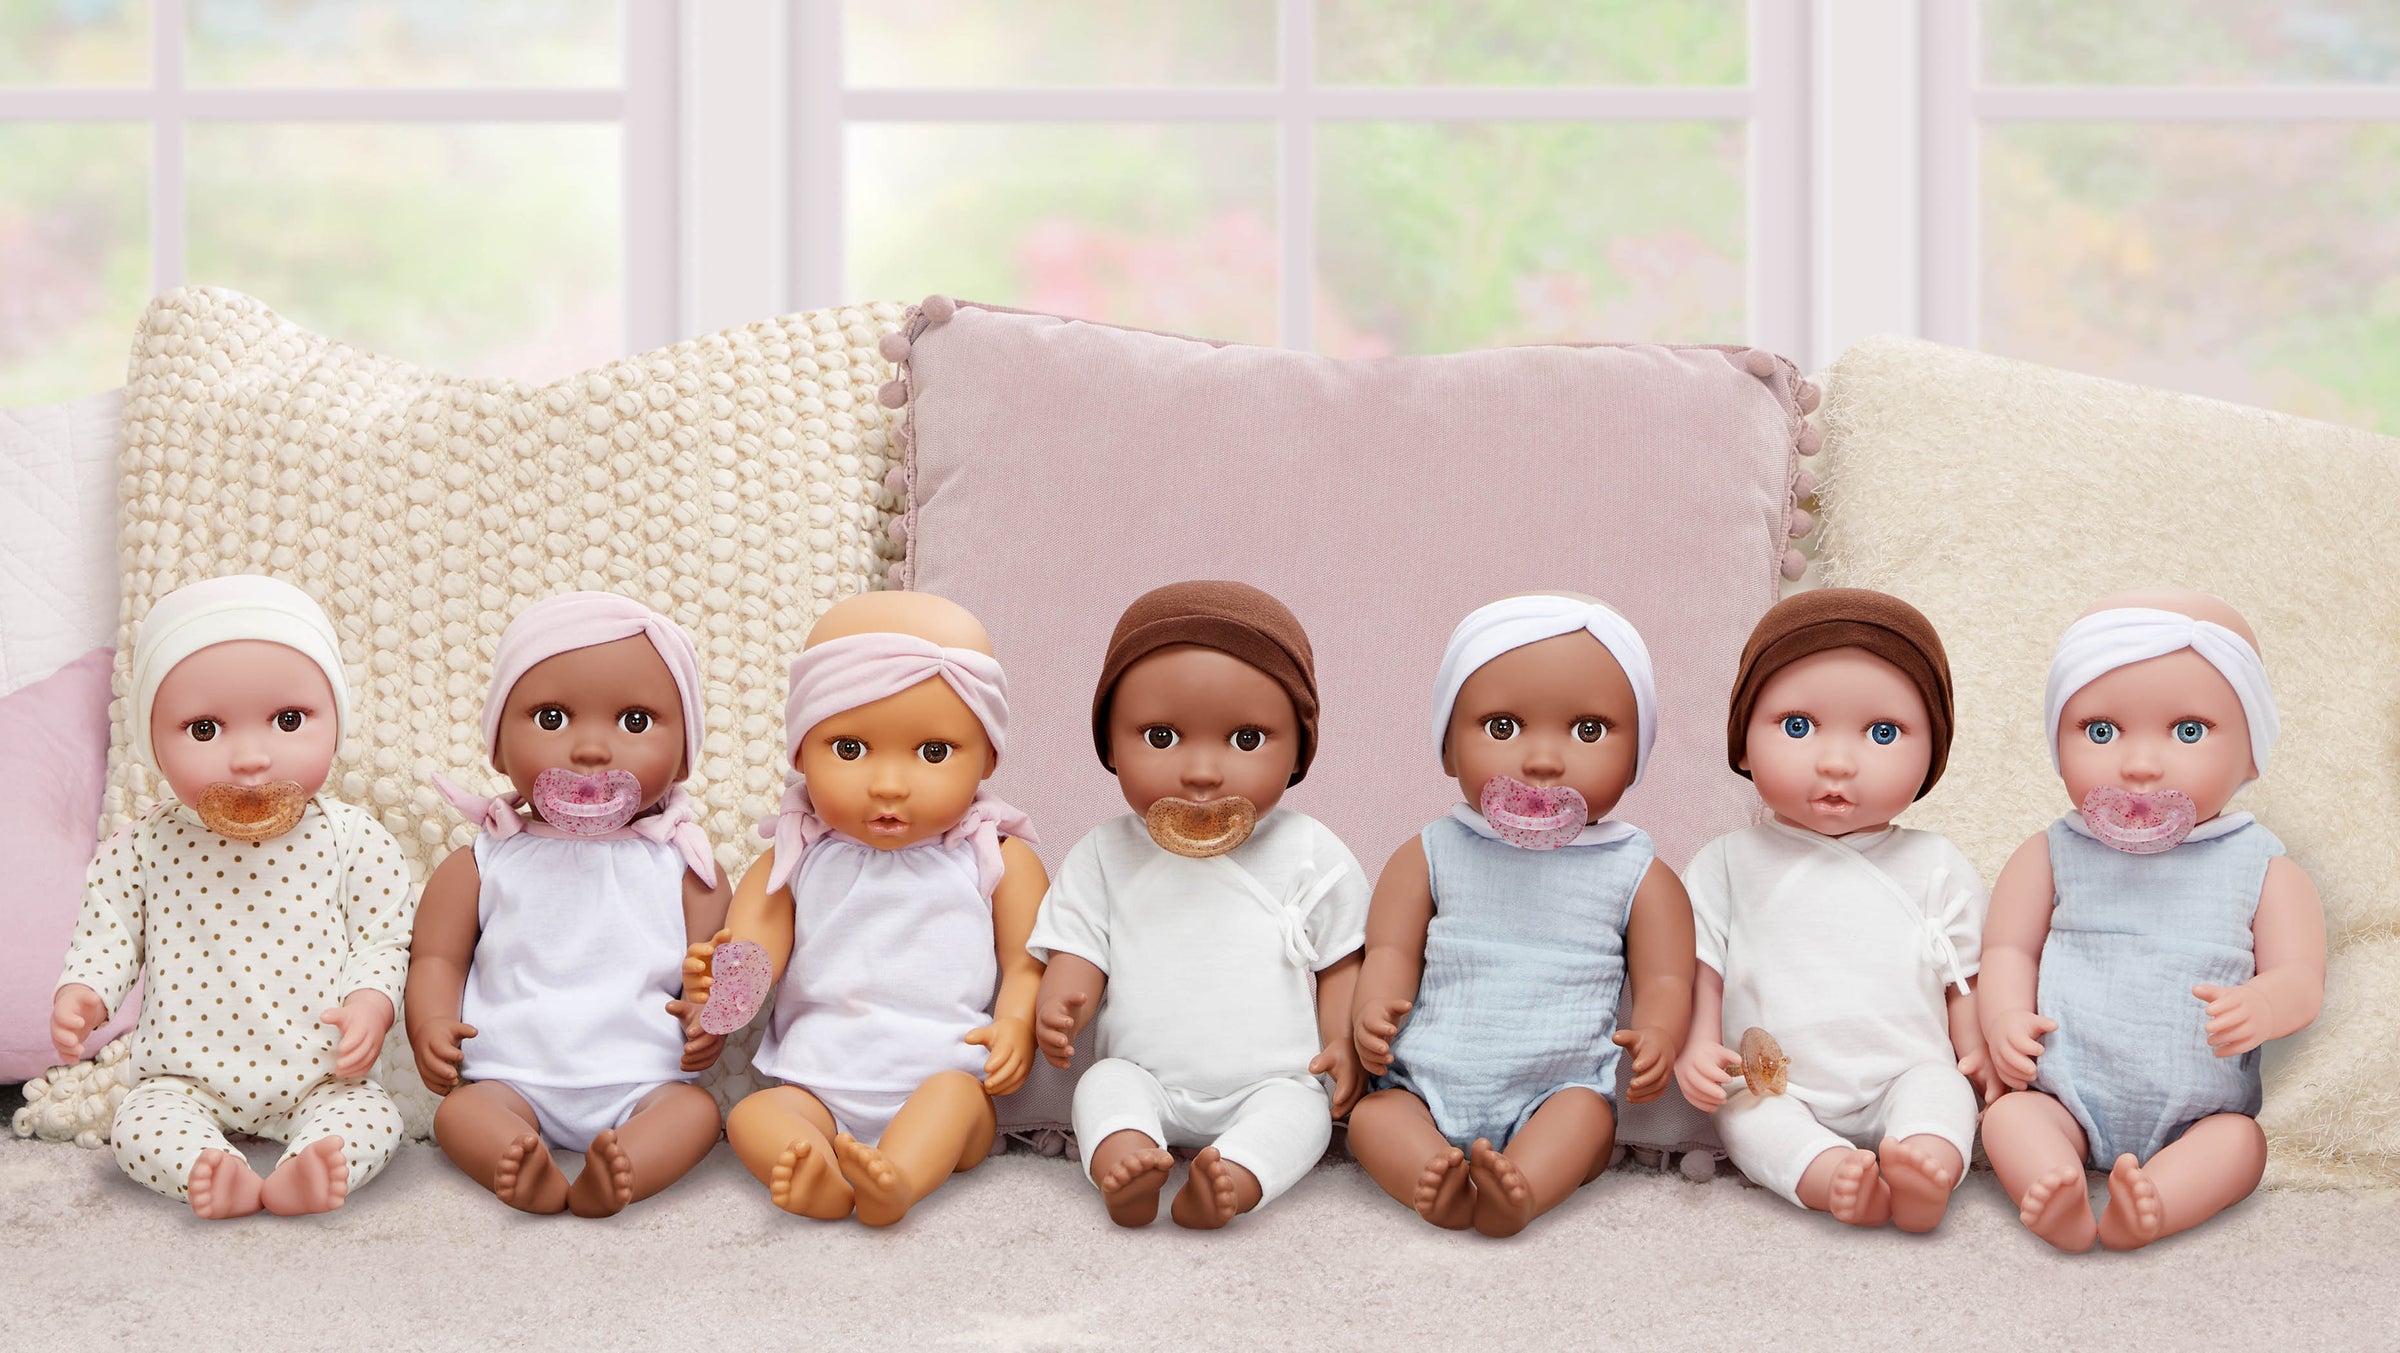 All Dolls - Baby Dolls, Twin Dolls & Bath Dolls - Gift Ideas for Kids - LullaBaby UK